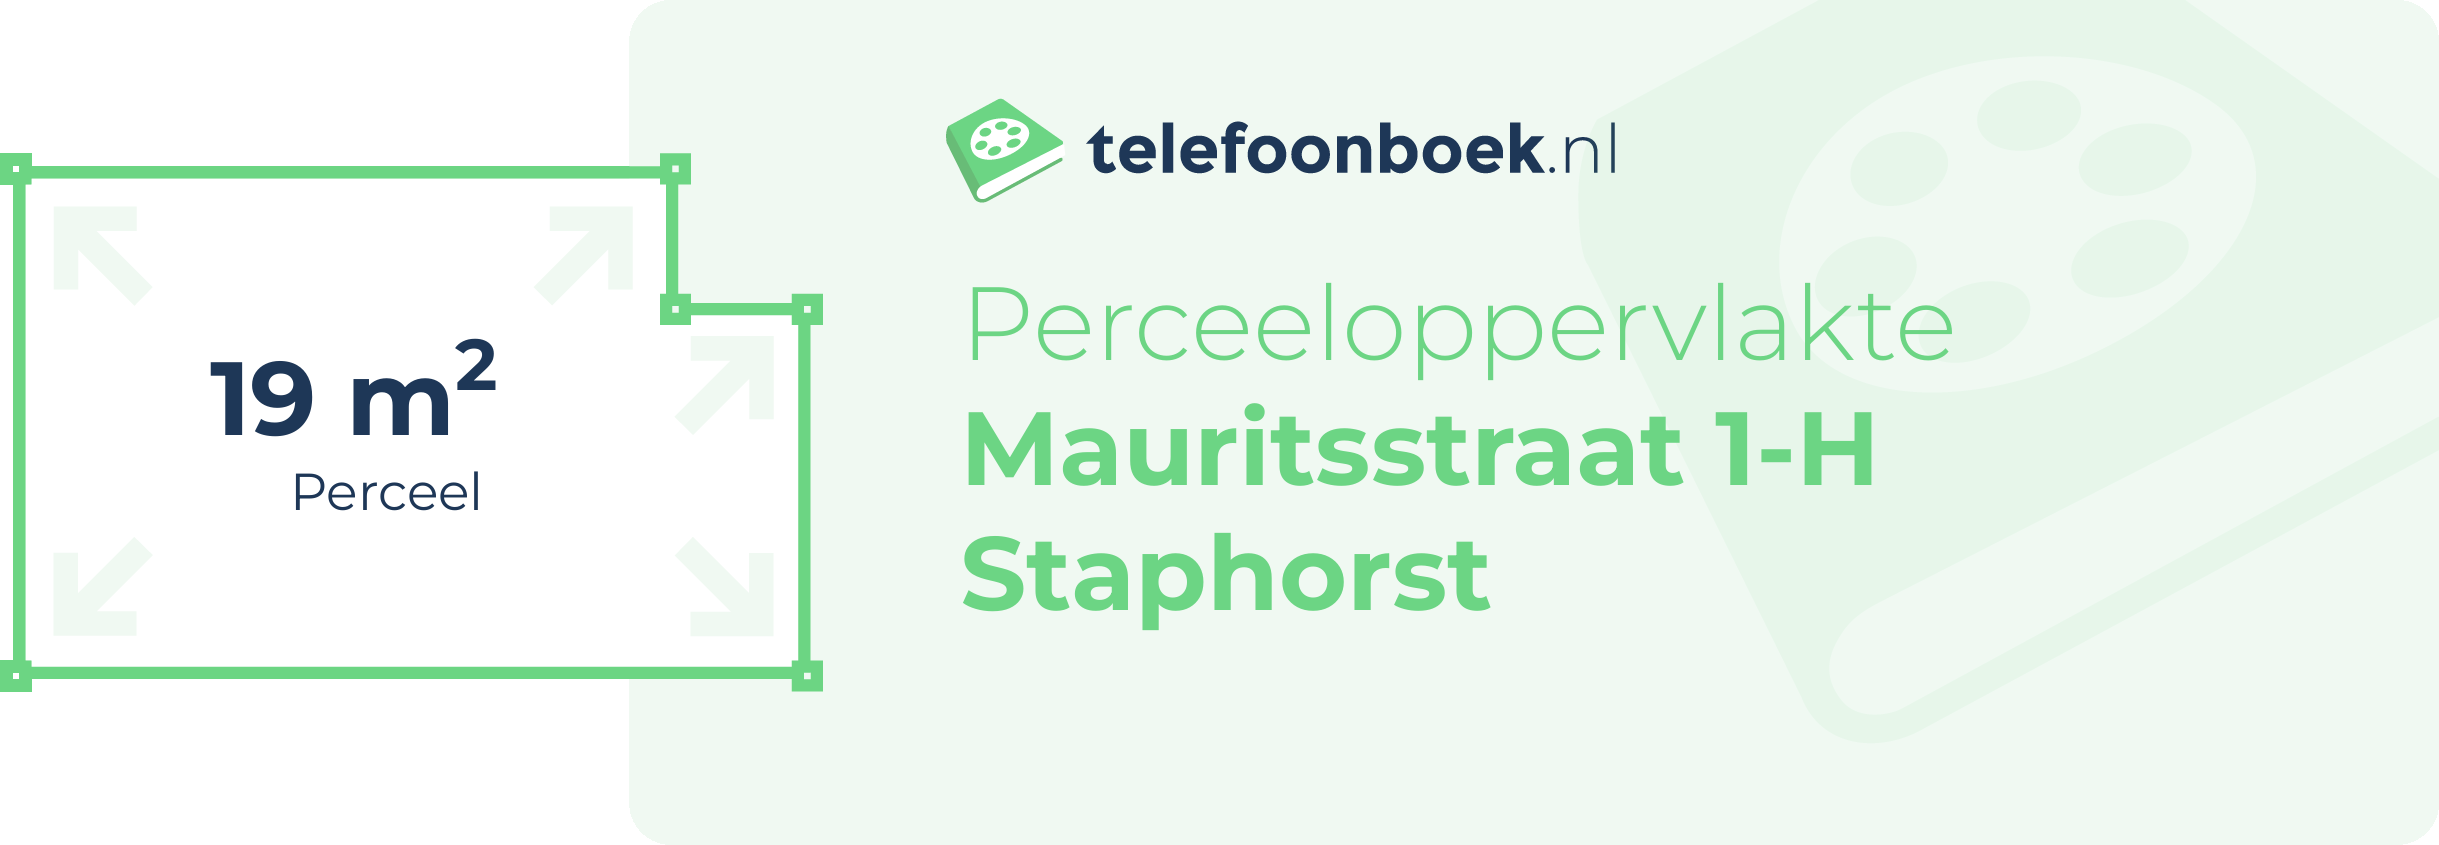 Perceeloppervlakte Mauritsstraat 1-H Staphorst